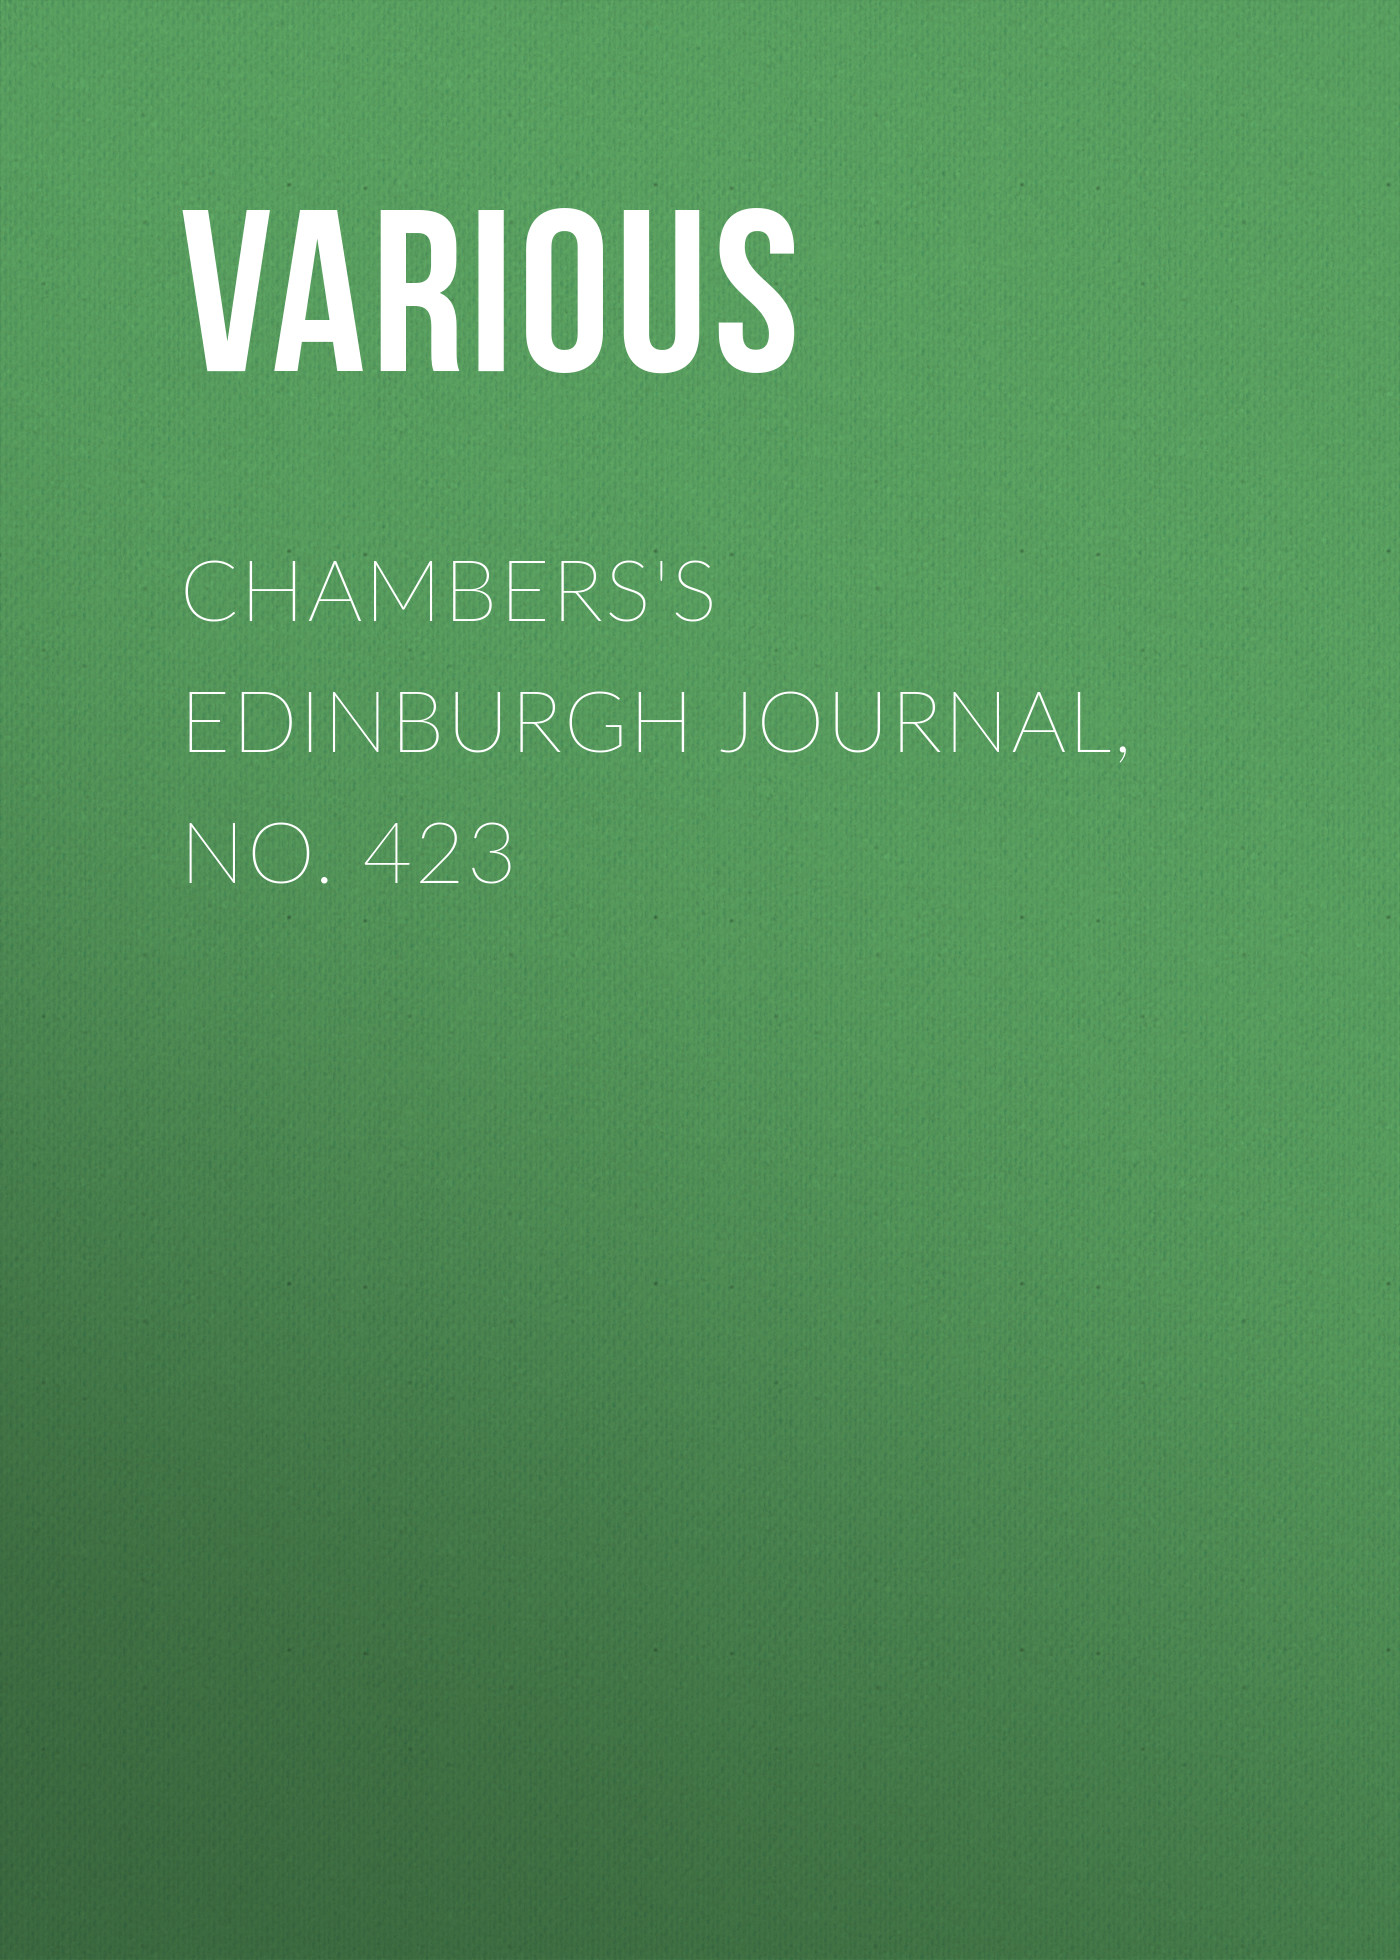 Книга Chambers's Edinburgh Journal, No. 423 из серии , созданная  Various, может относится к жанру Зарубежная старинная литература, Журналы, Зарубежная образовательная литература. Стоимость электронной книги Chambers's Edinburgh Journal, No. 423 с идентификатором 35492151 составляет 0 руб.